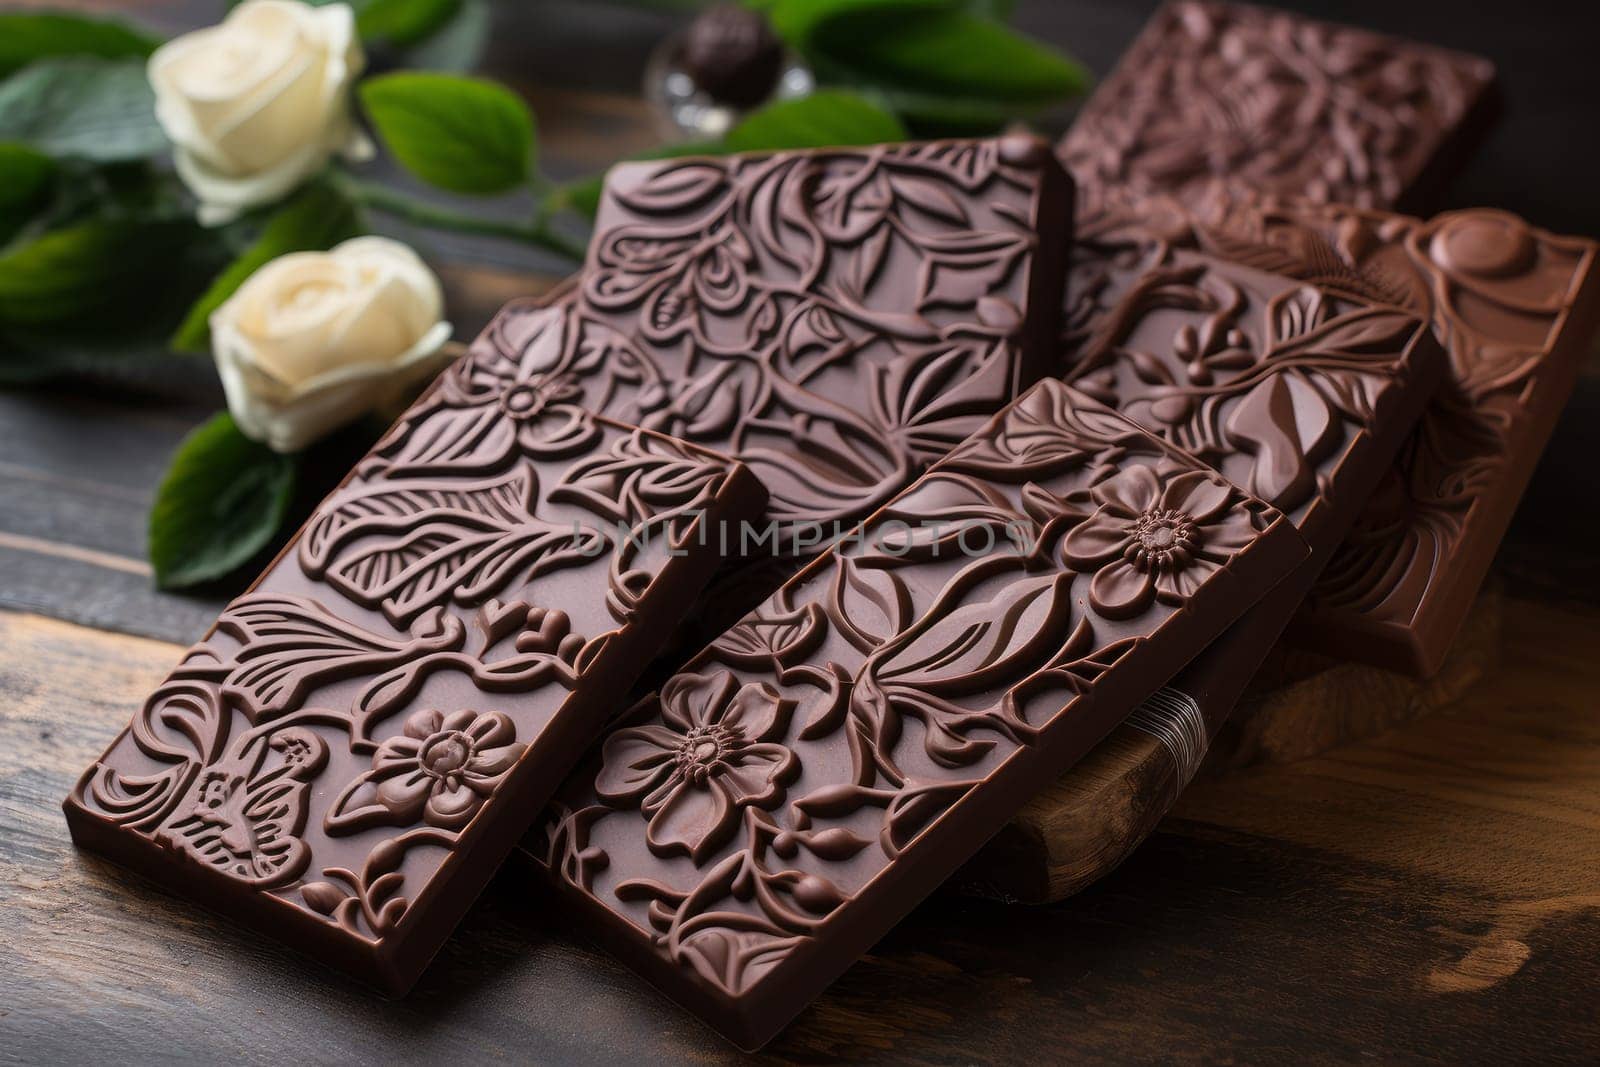 Artisanal Handmade vegan chocolate. Generate Ai by ylivdesign